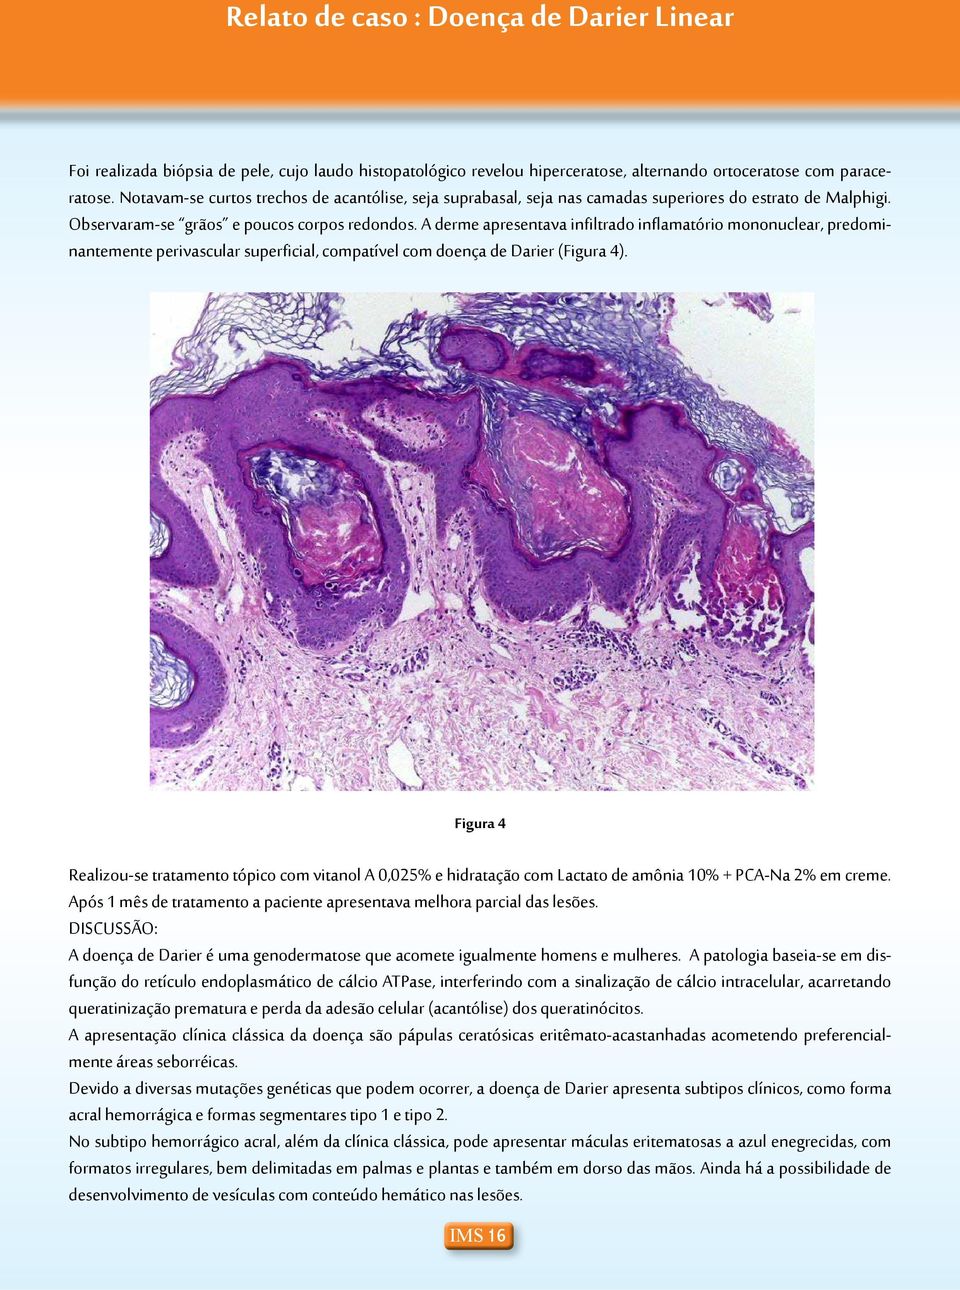 A derme apresentava infiltrado inflamatório mononuclear, predominantemente perivascular superficial, compatível com doença de Darier (Figura 4).